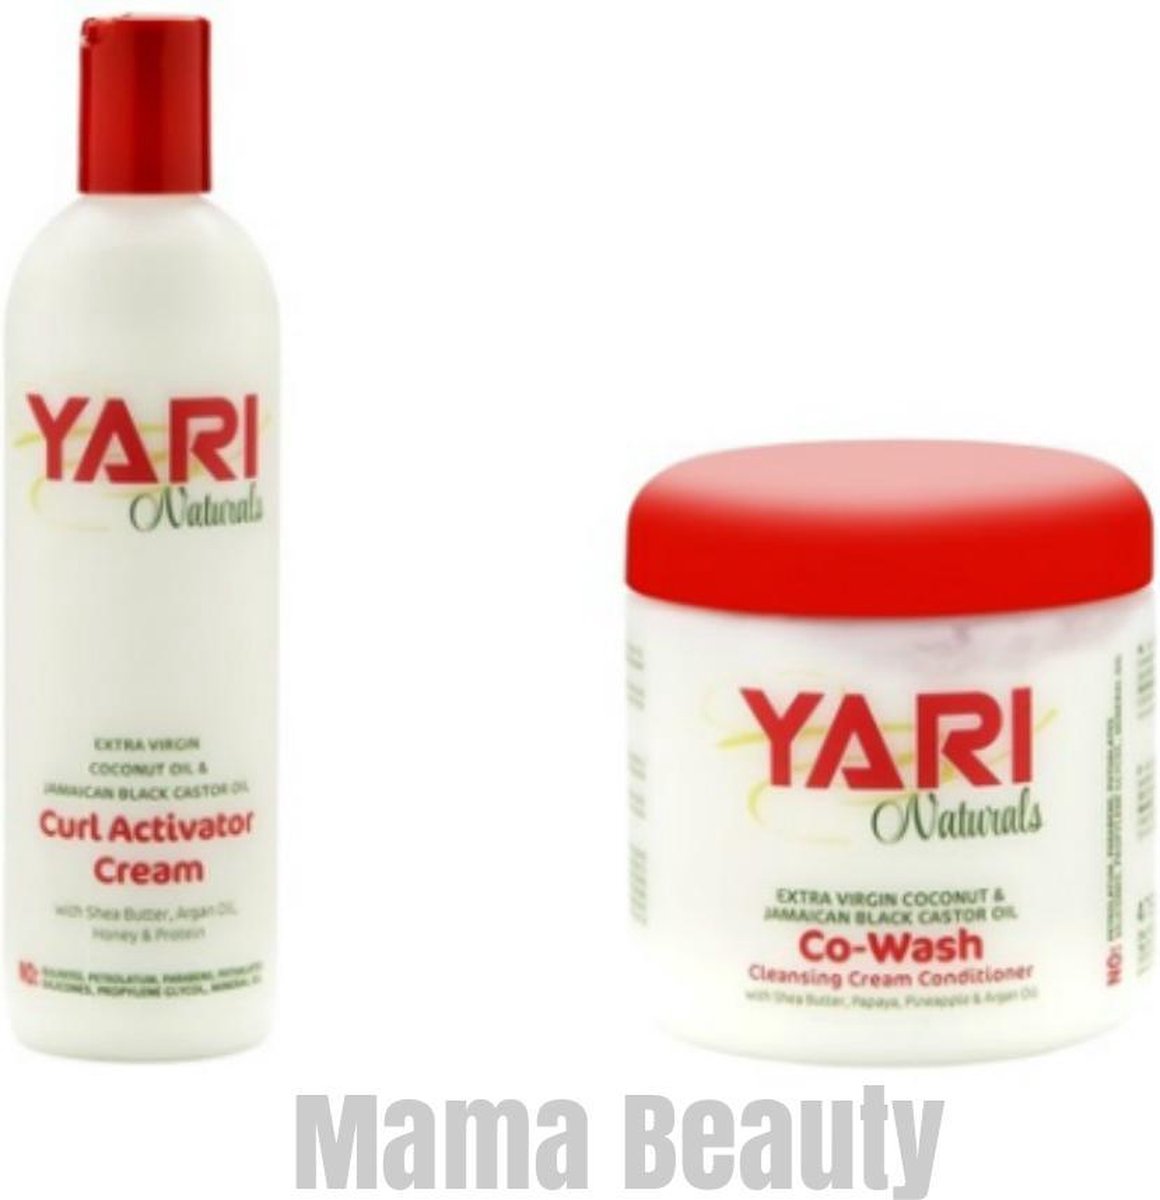 Yari Naturals Co-Wash + Naturals Curl Activator Cream set